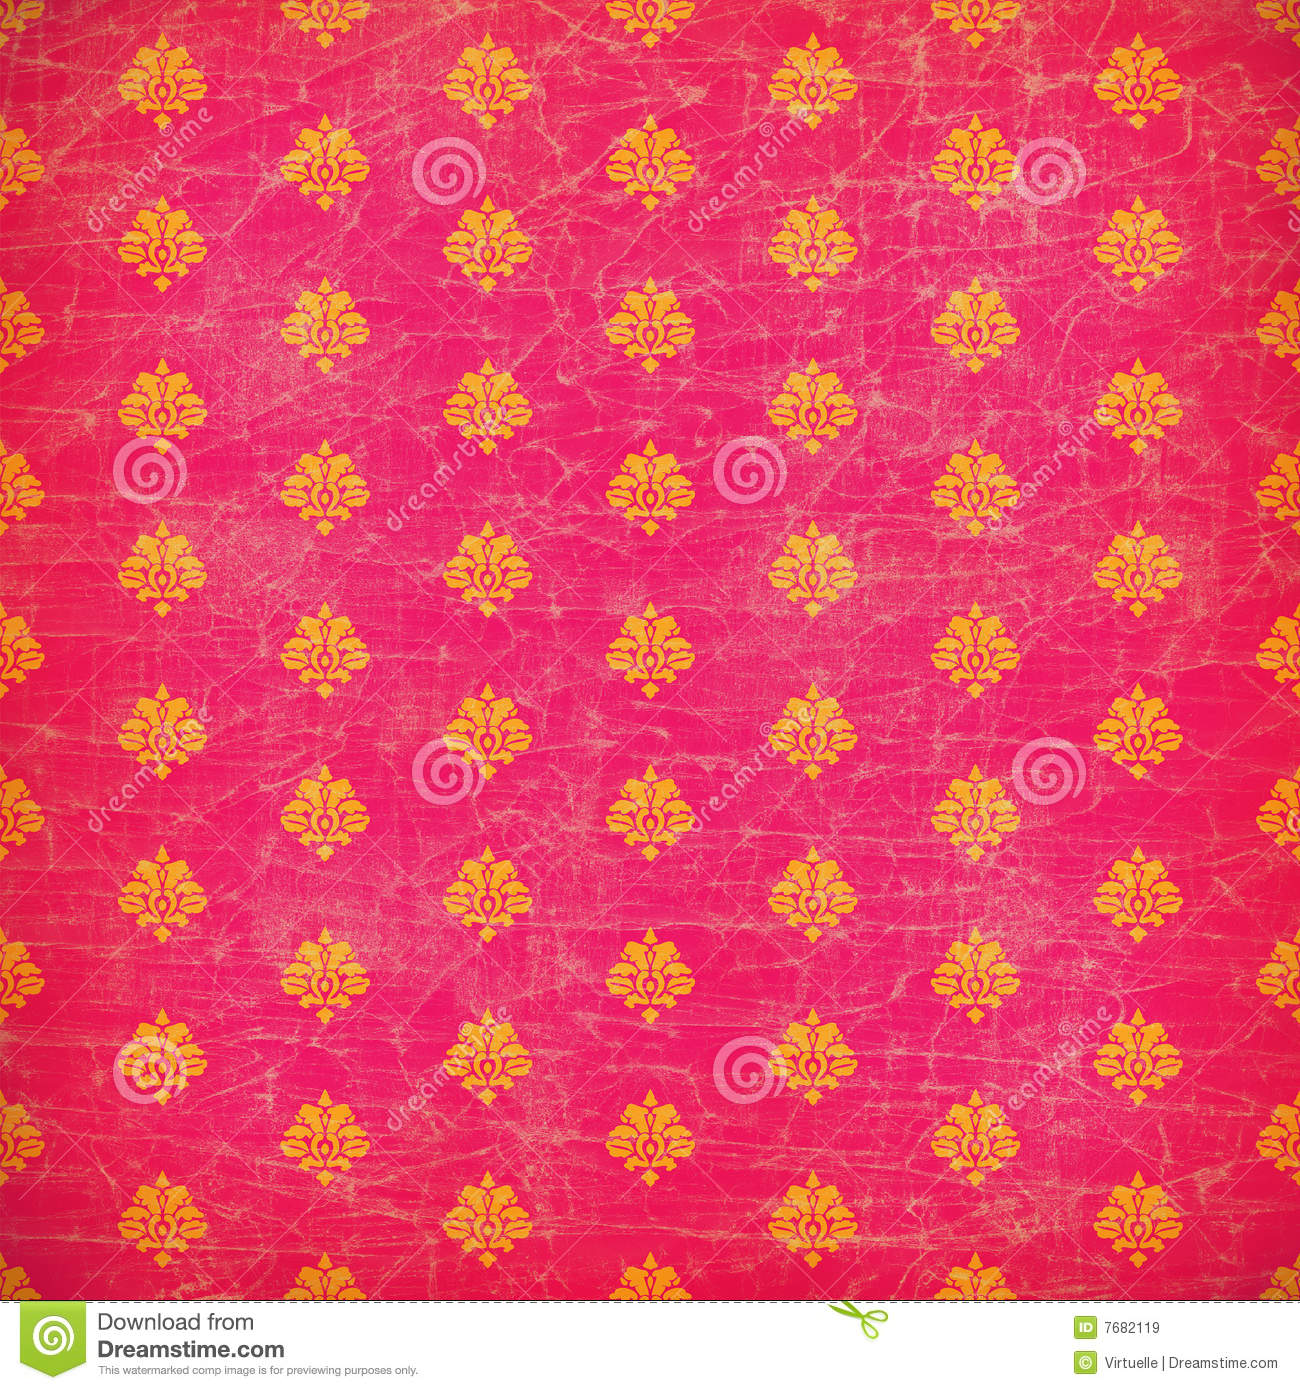 Pink Orange Wallpaper Pink and orange damask grunge